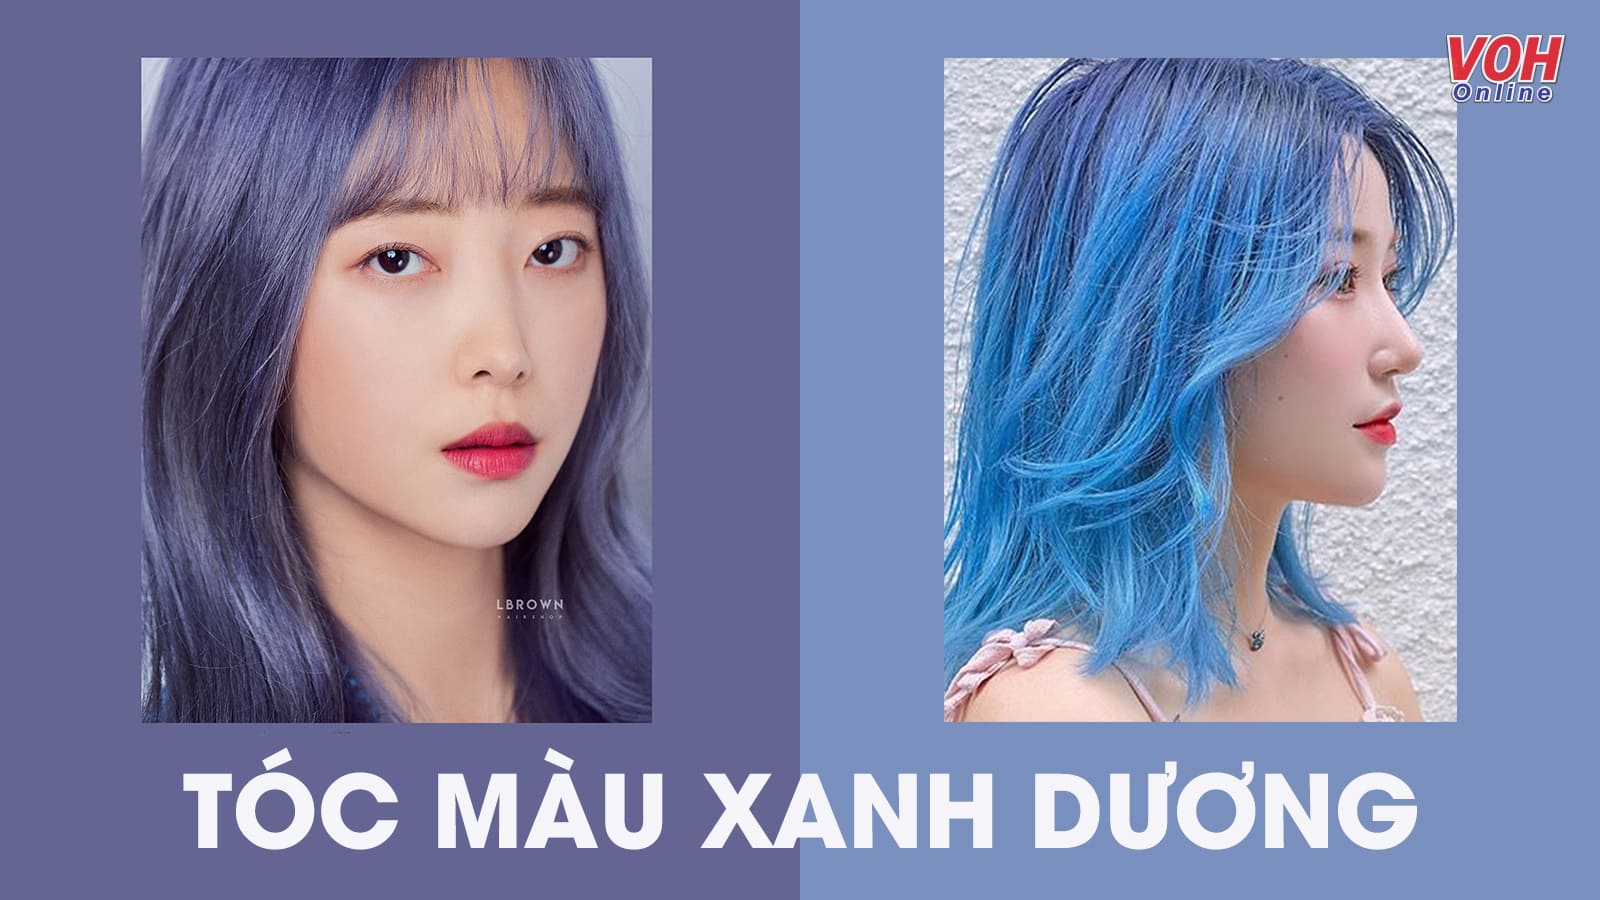 Bạn muốn có một phong cách táo bạo và khác biệt? Thử tô màu xanh dương trên tóc của bạn để tạo ra một diện mạo đầy sáng tạo và thú vị. Hãy xem những hình ảnh liên quan để biết thêm chi tiết.